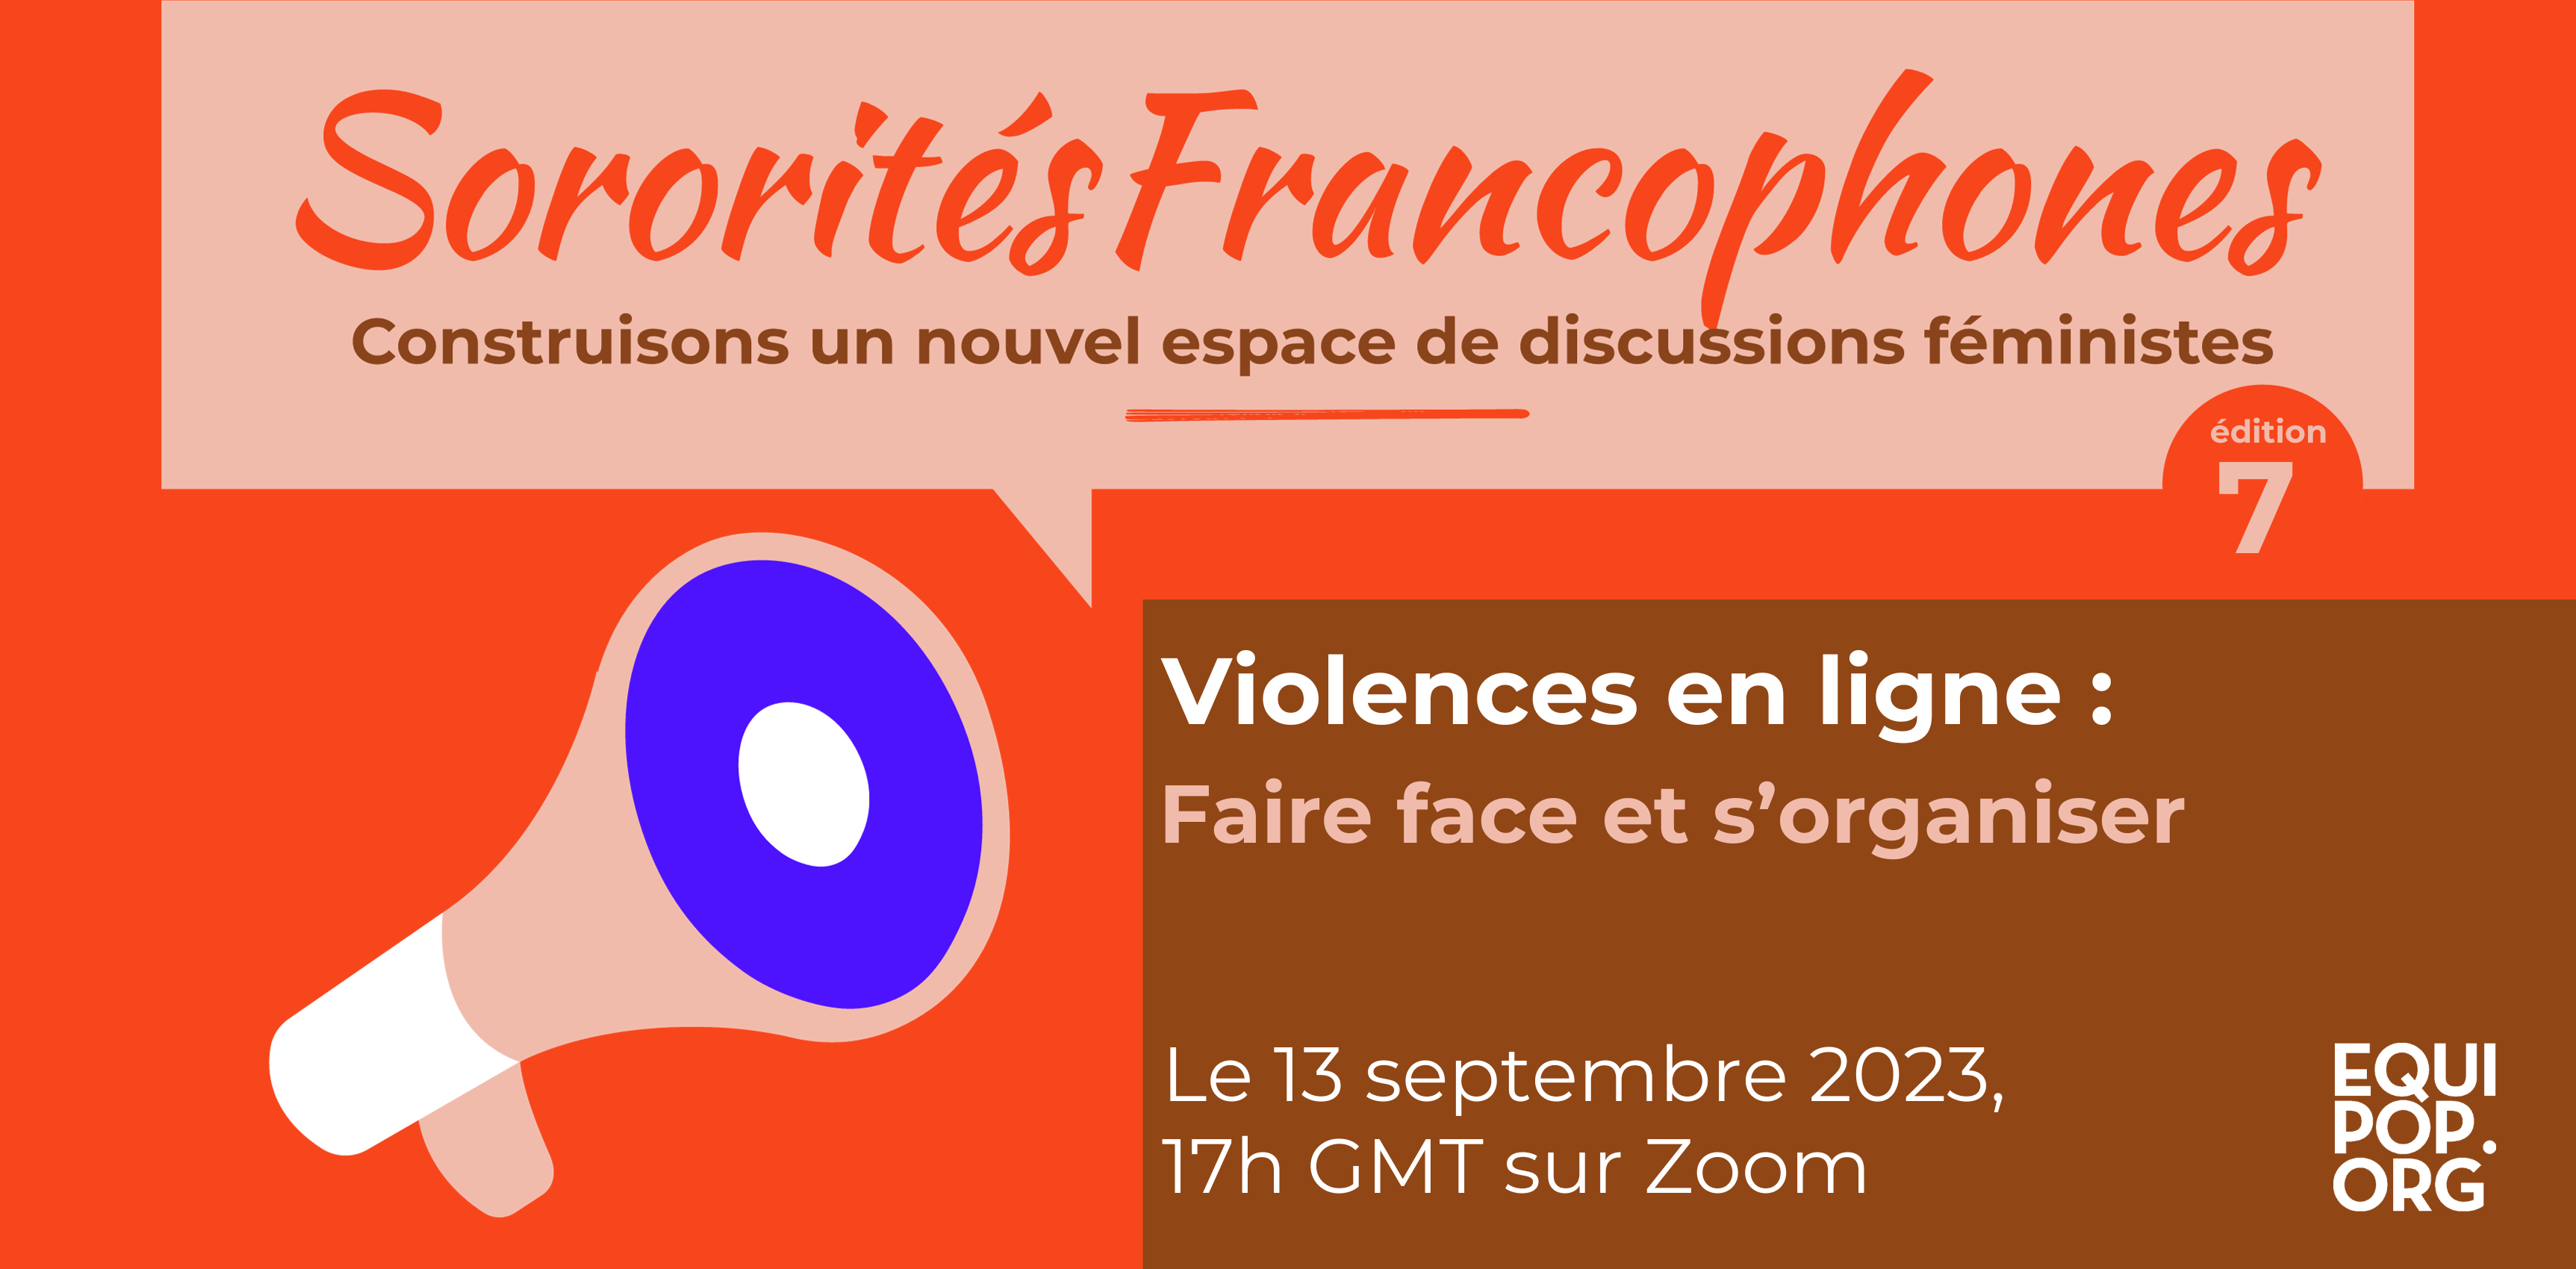 Sororités francophones sur les violences en ligne